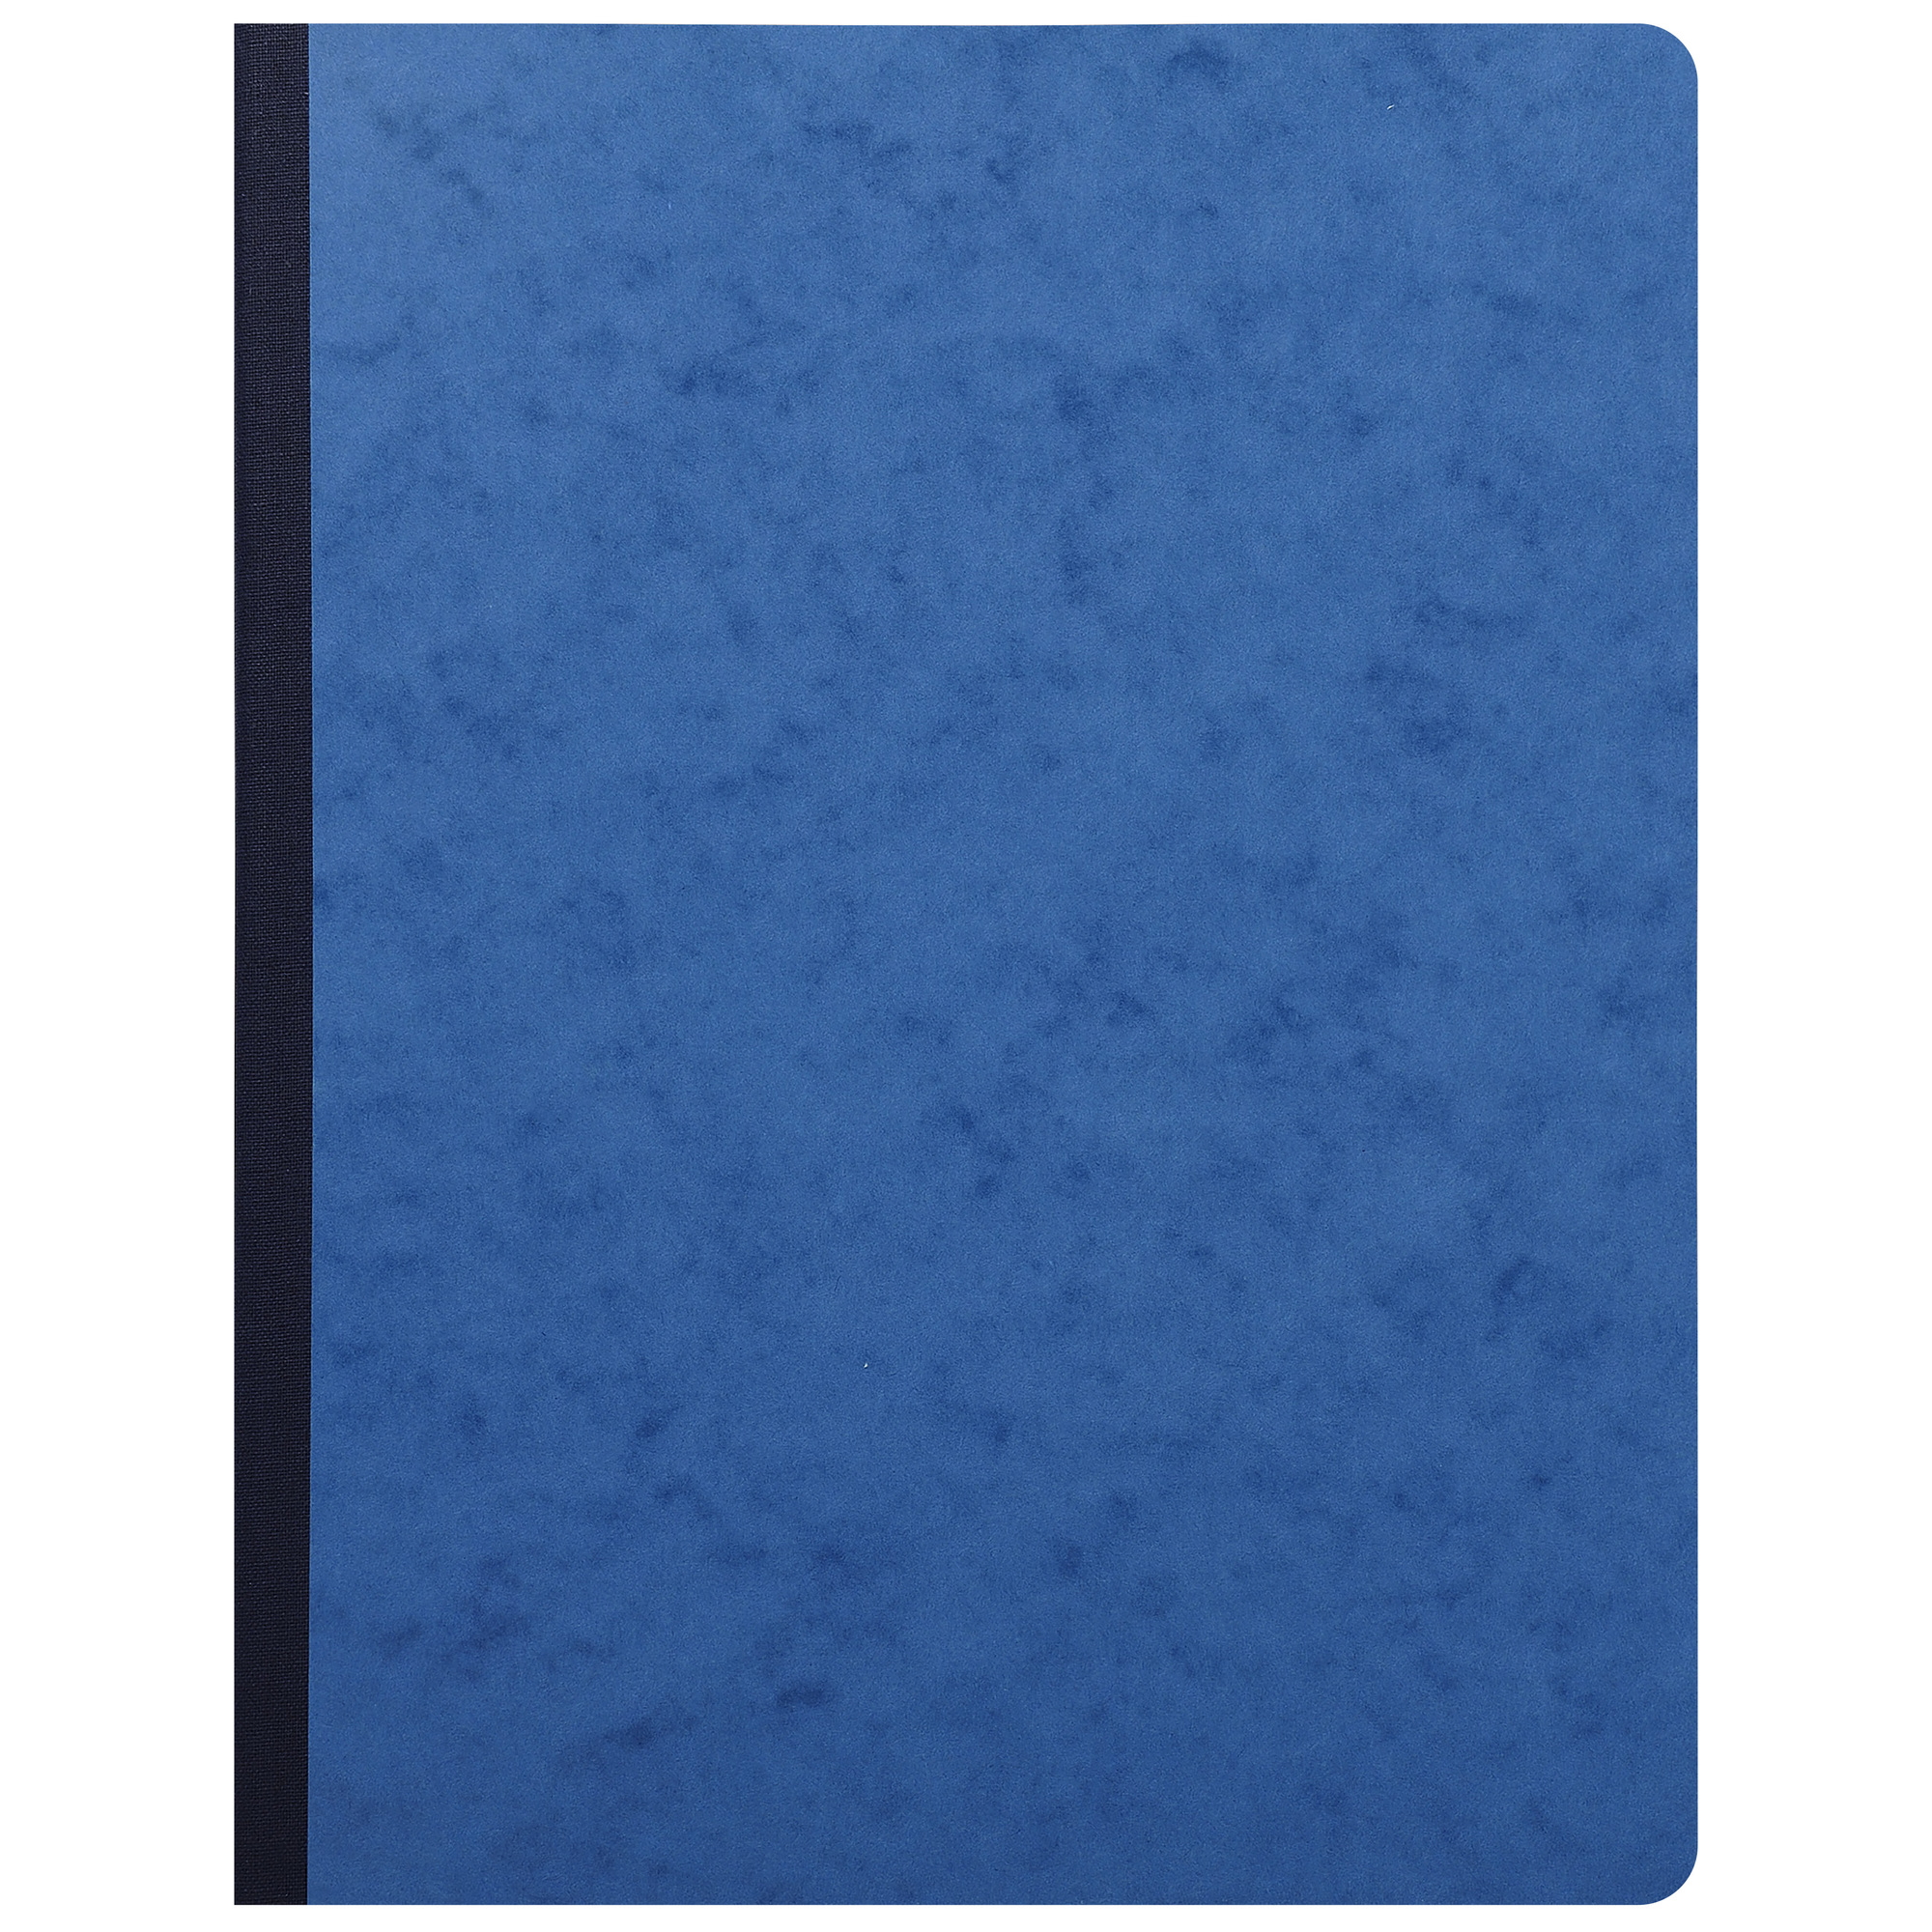 Exacompta - Piqûre 32x25cm Journal de caisse ou banque 5 débit - 5 crédit  33 lignes 80 pages - Couleurs assorties